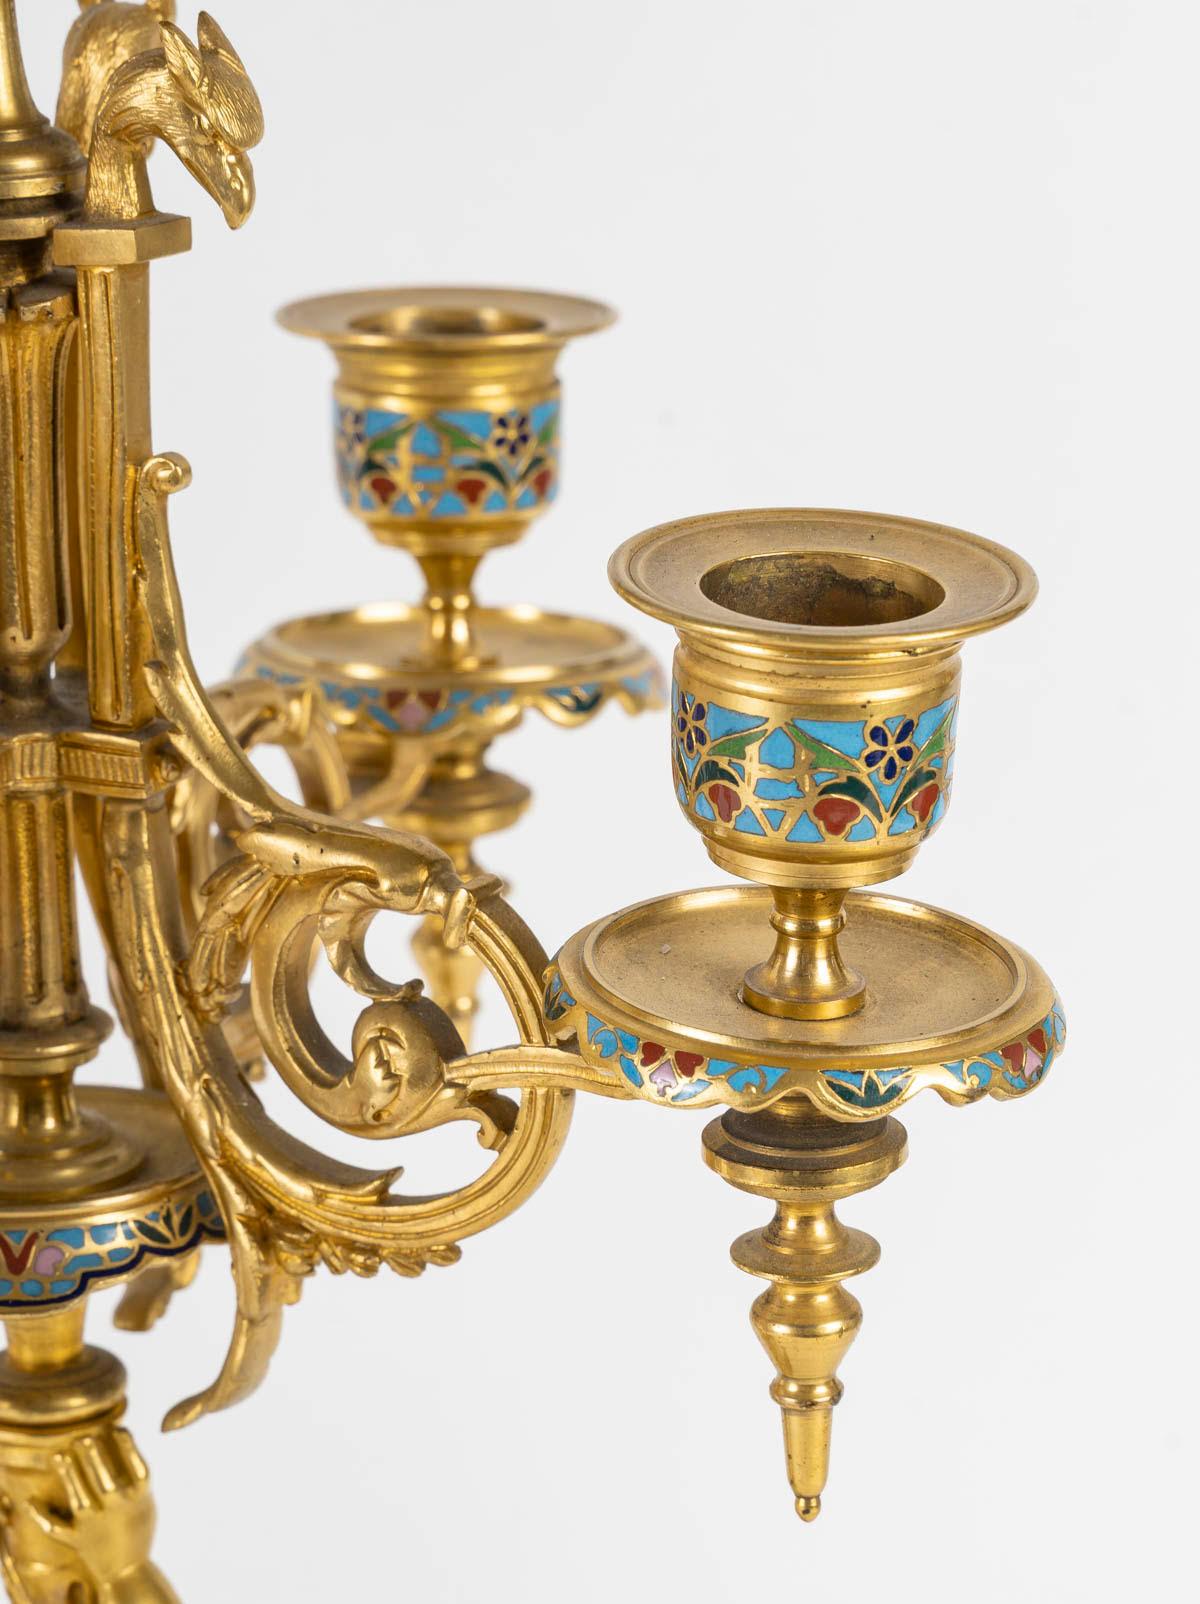 Cloisonné Cheminée et chandeliers en bronze doré et cloisonné, période Napoléon. en vente